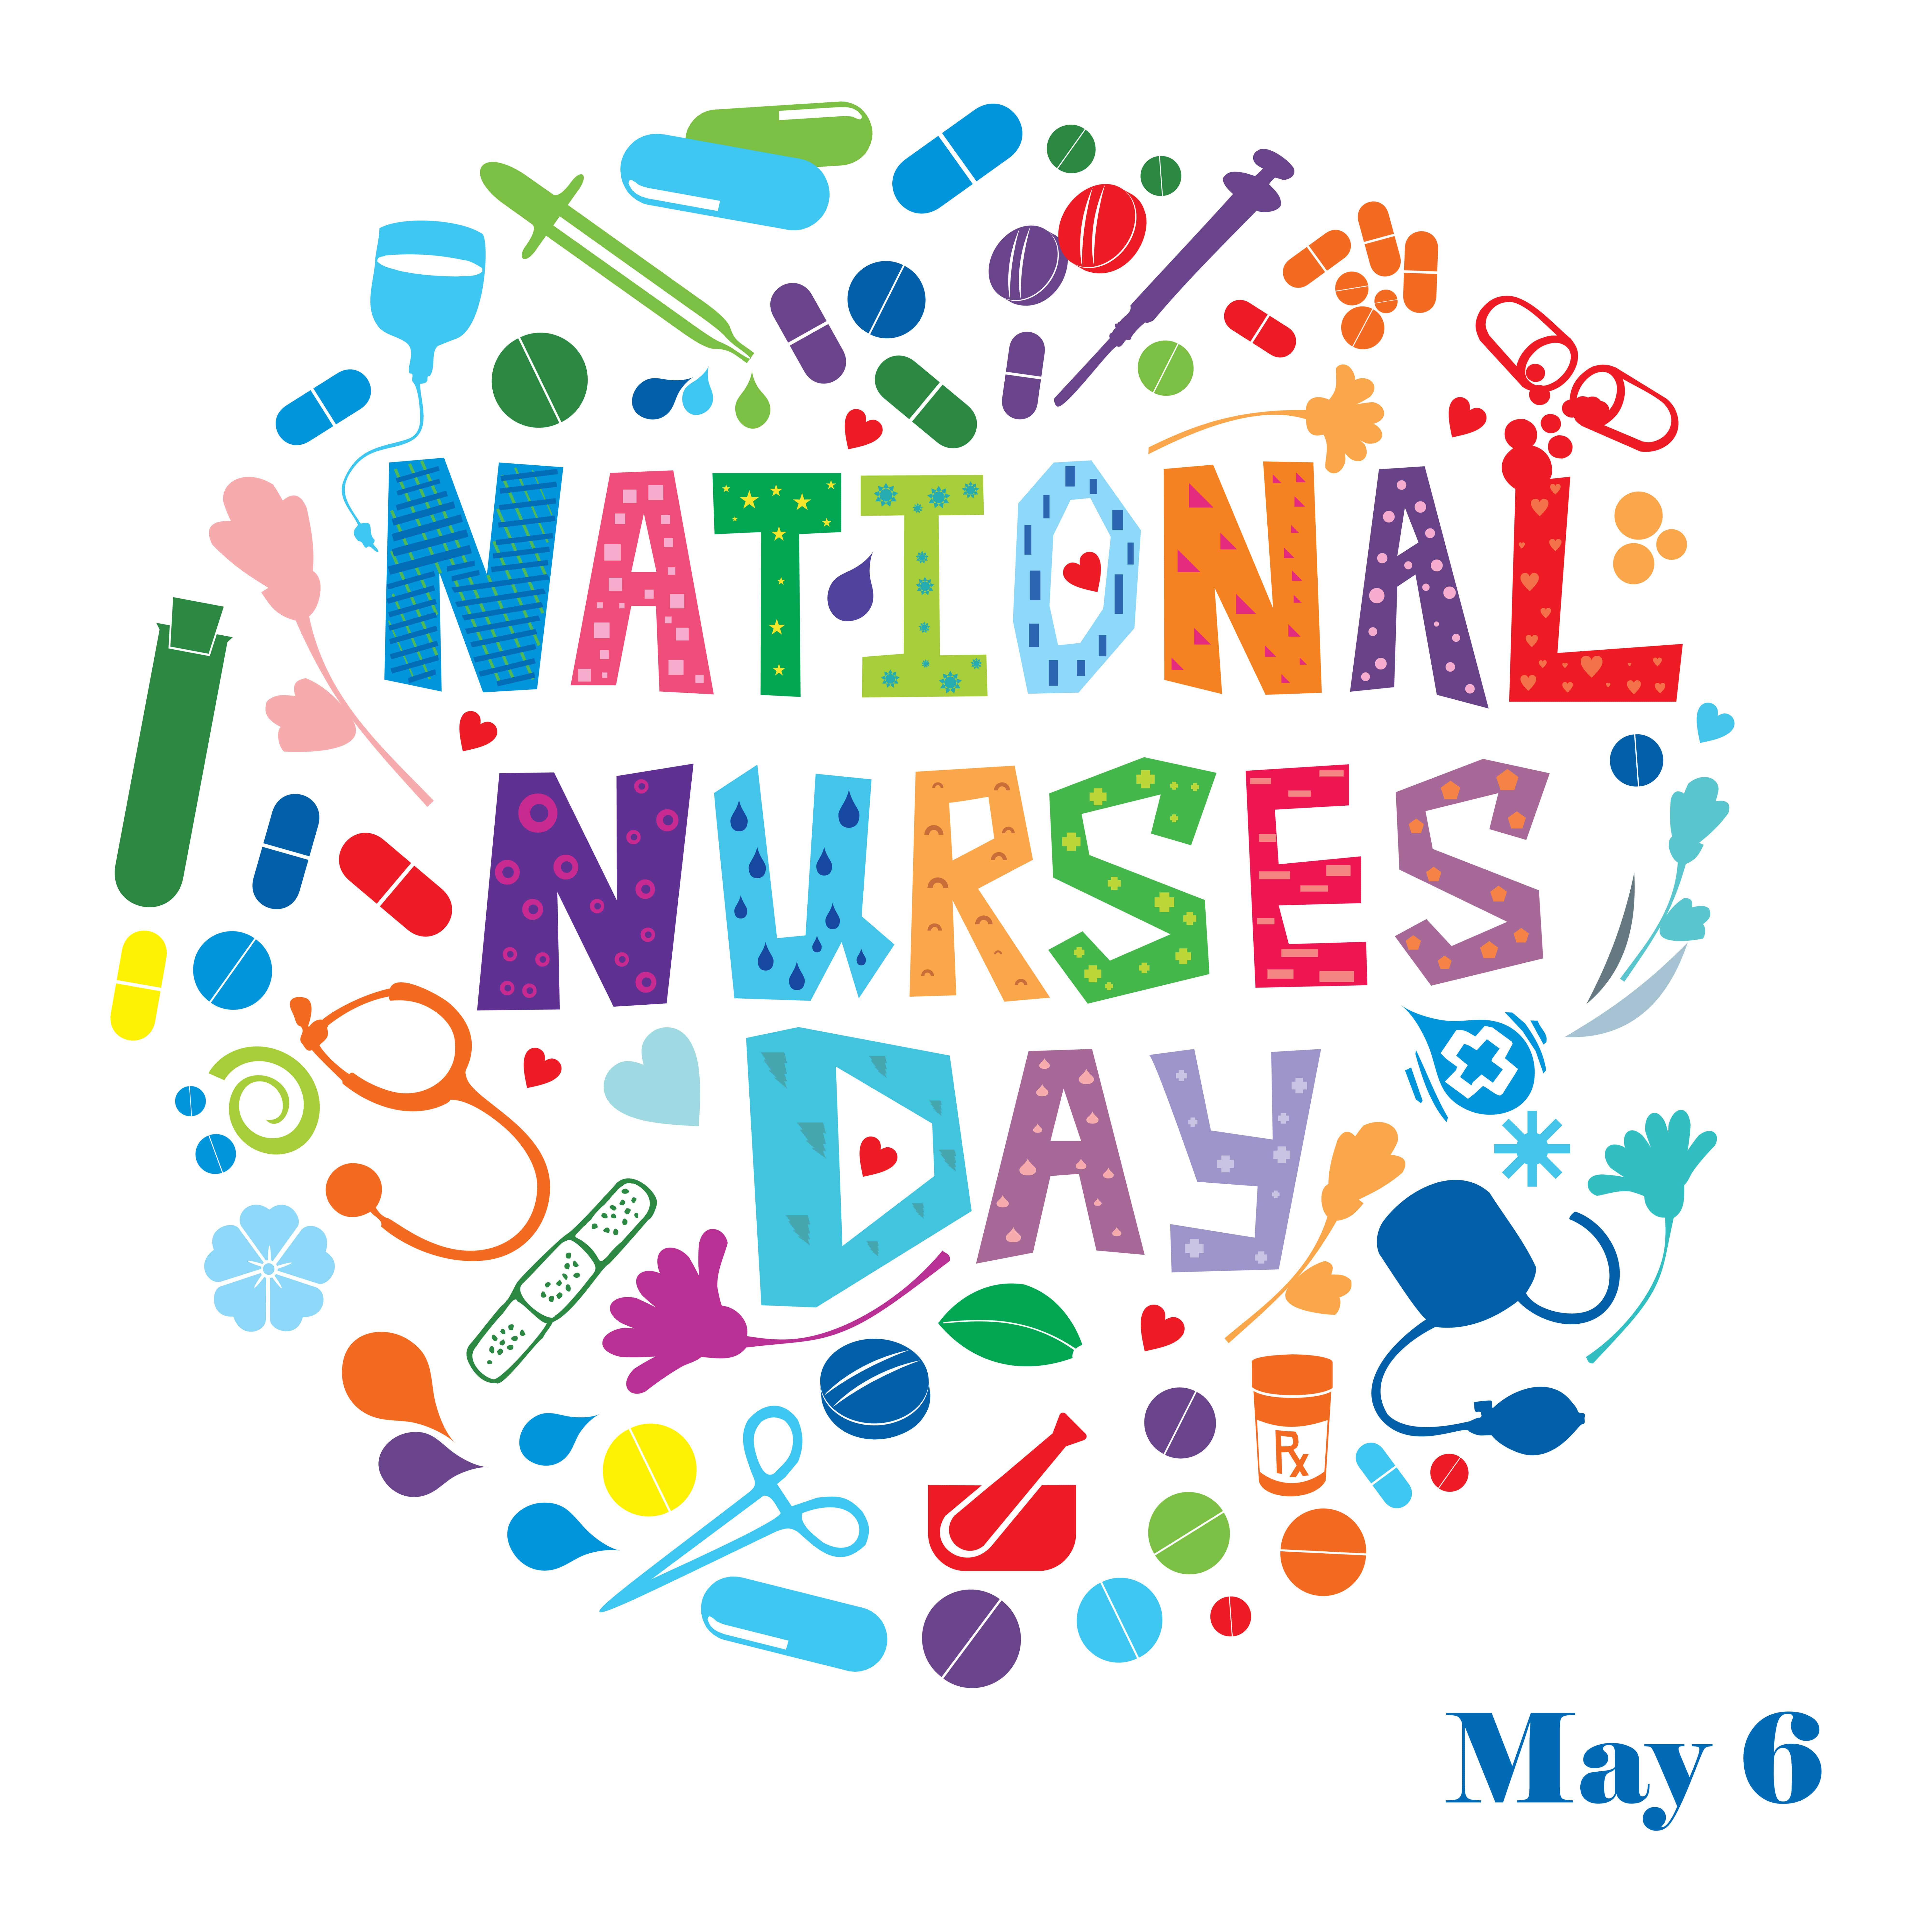 nurses-day-theme-2020-nursing-the-world-to-health-icn-announces